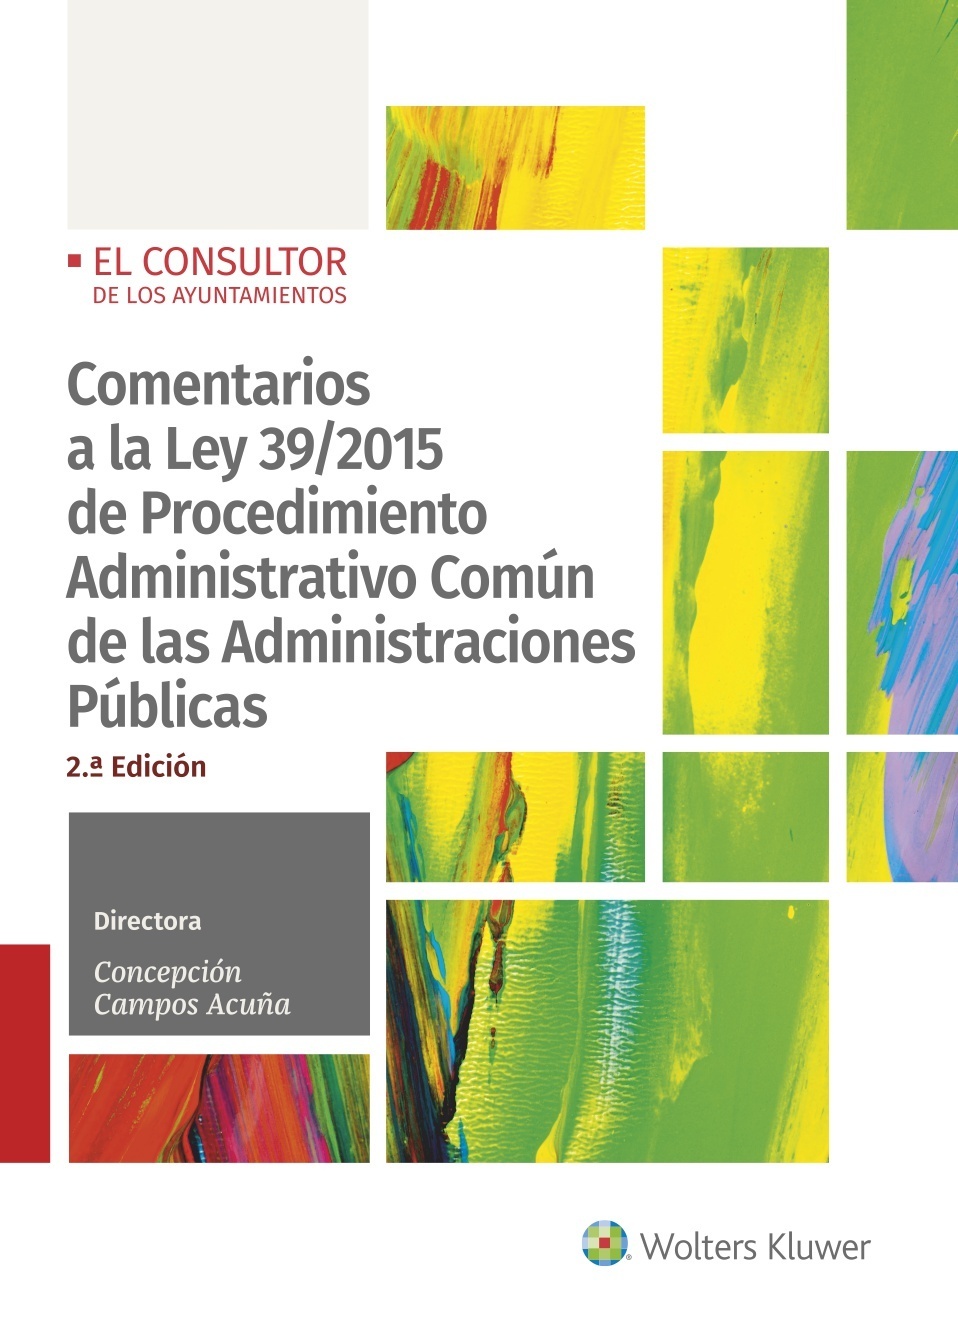 Comentarios a la Ley 39/2015 de Procedimiento administrativo común de las administraciones públicas (2.ª Edición